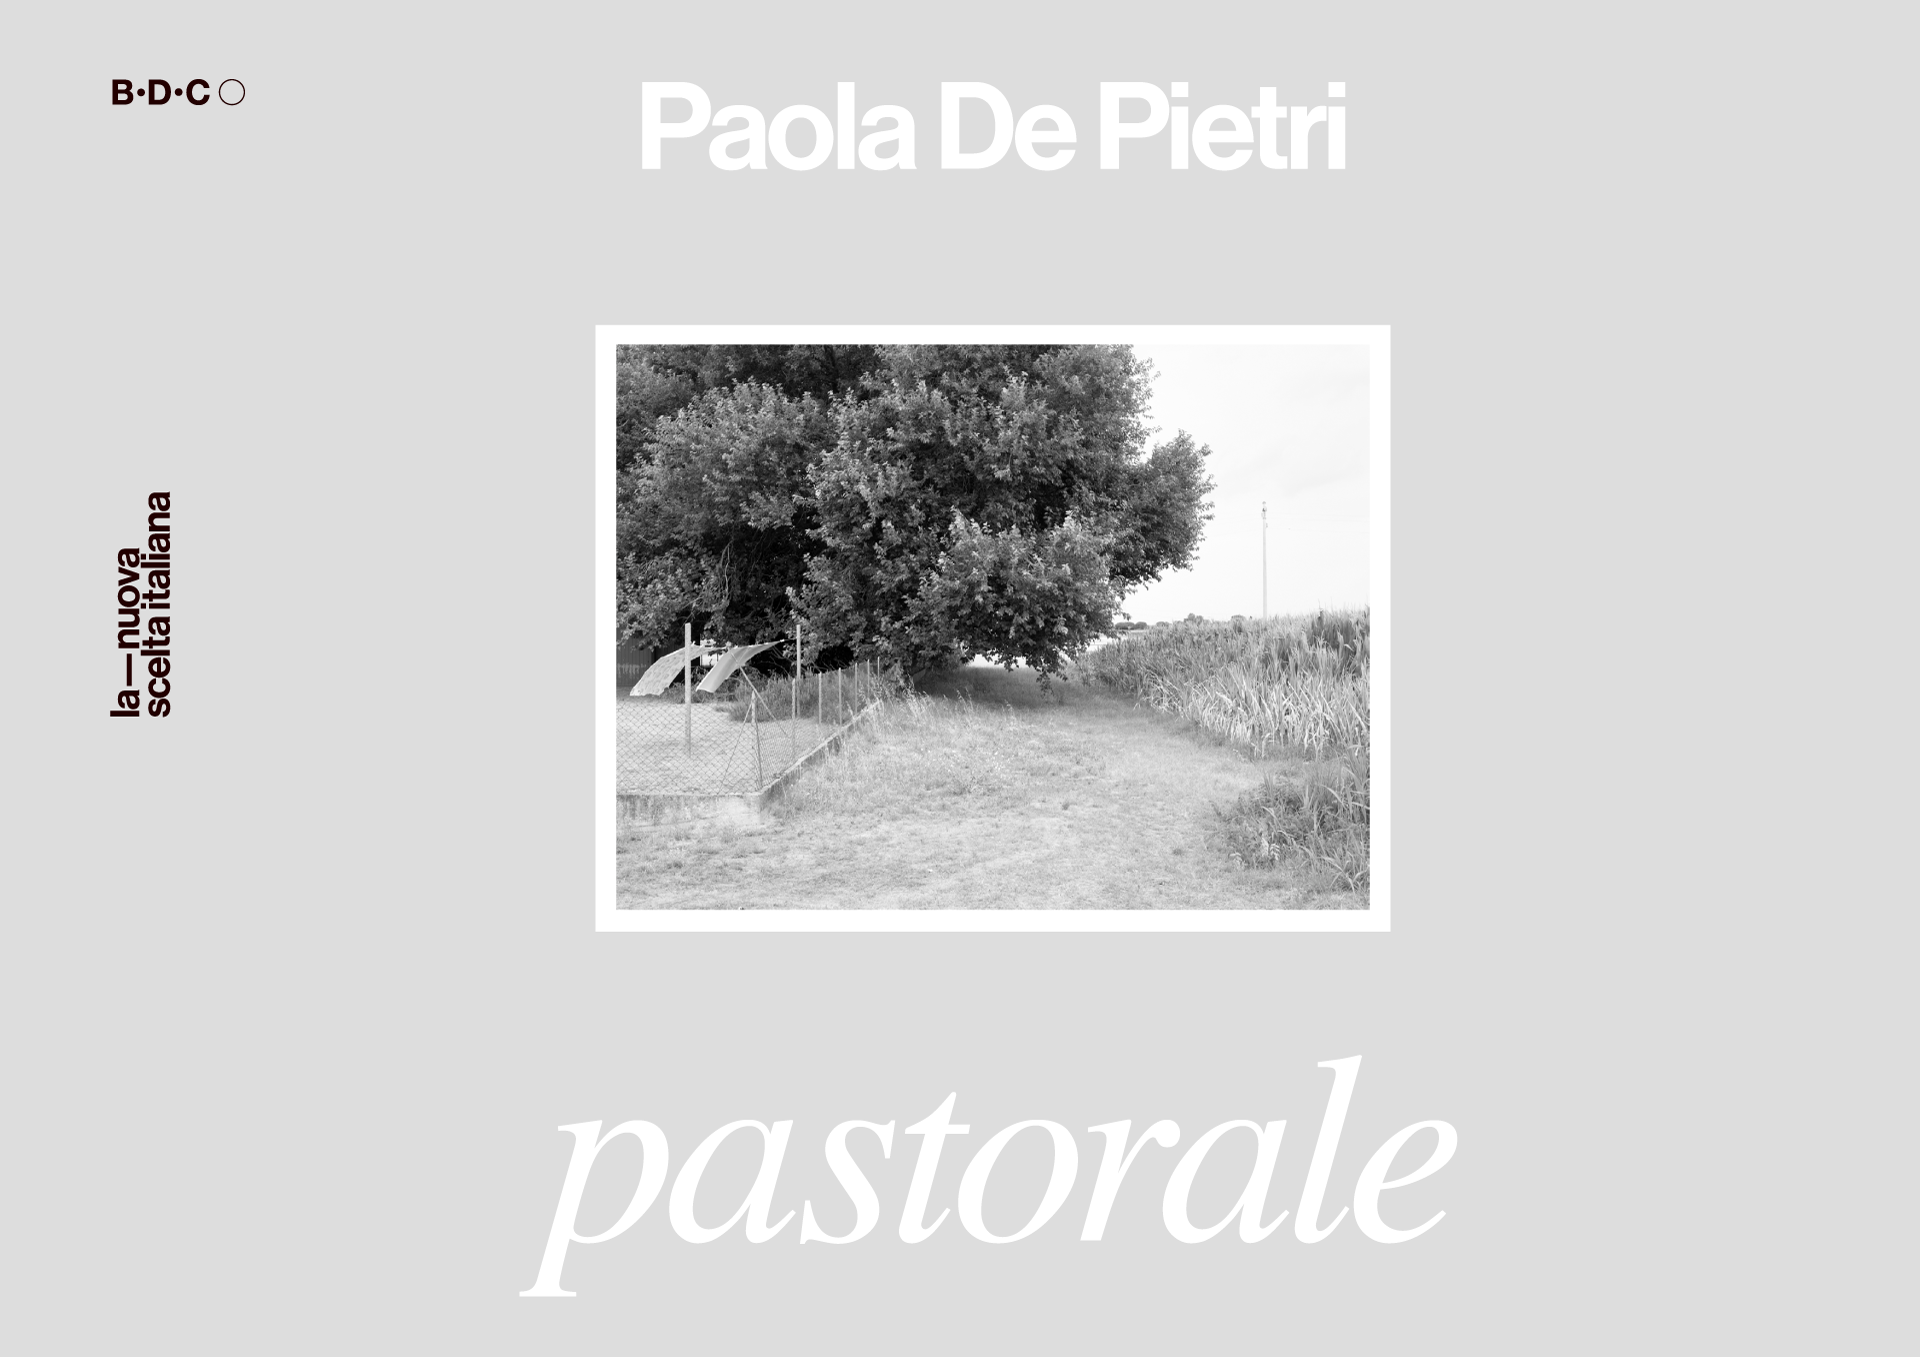 Pastorale - Paola de Pietri